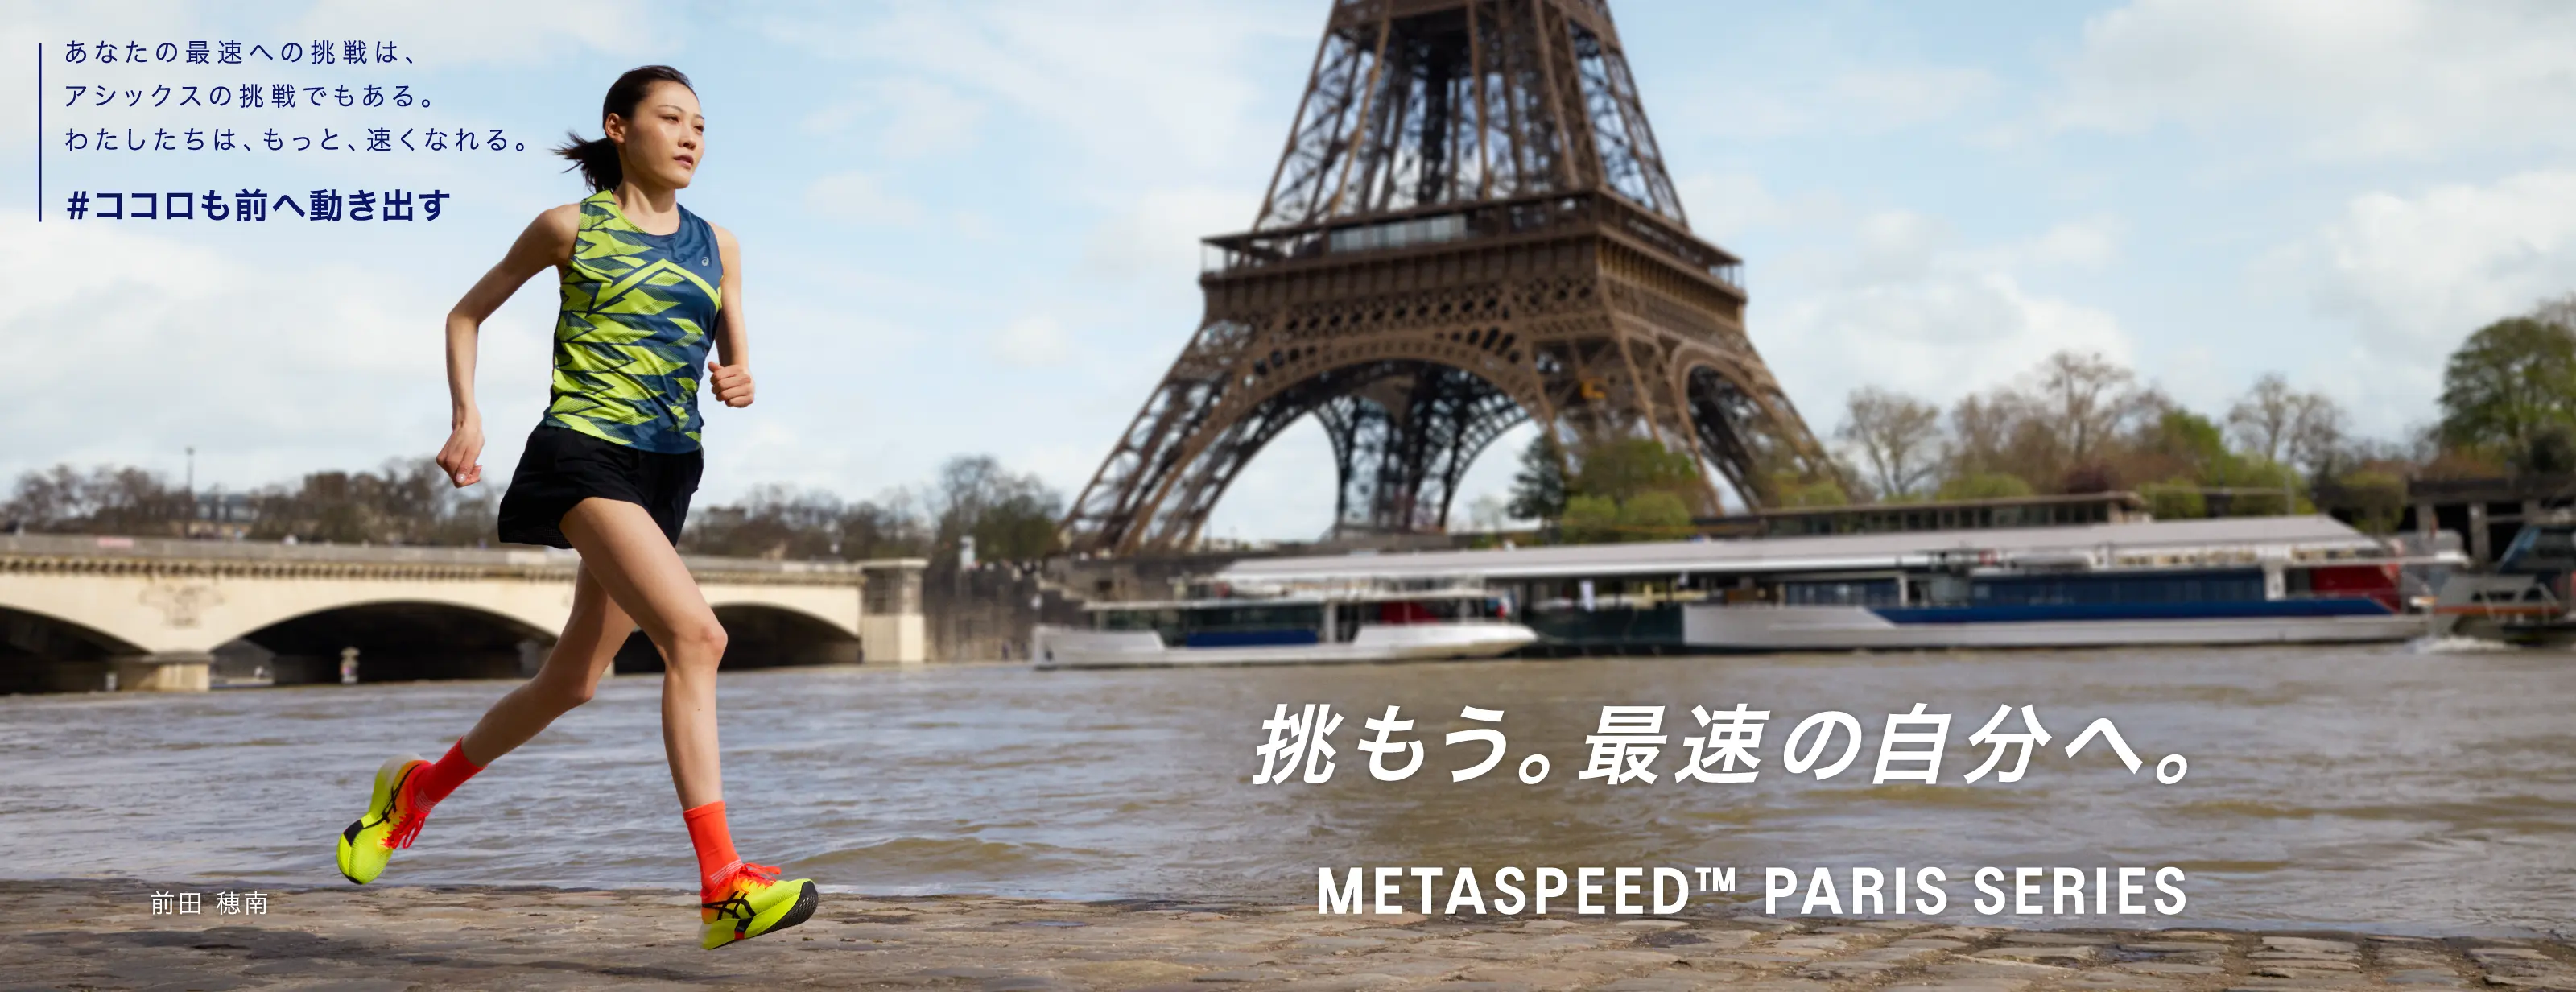 挑もう。最速の自分へ。METASPEED PARIS SERIES HERO BANNER